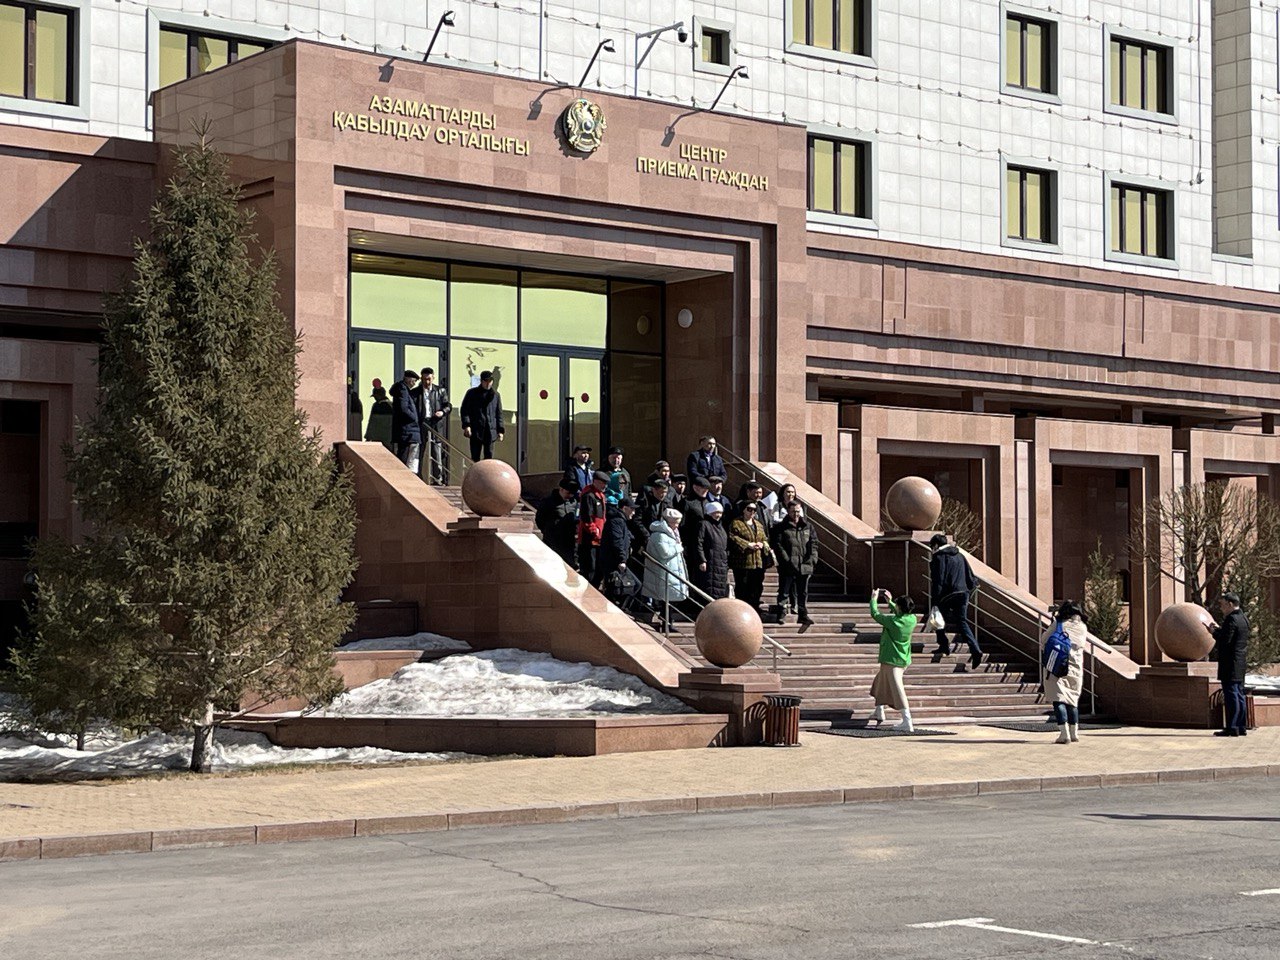  Лоббирование и коррупция: казахстанцы требуют создать спецкомиссию для пересмотра судебных актов